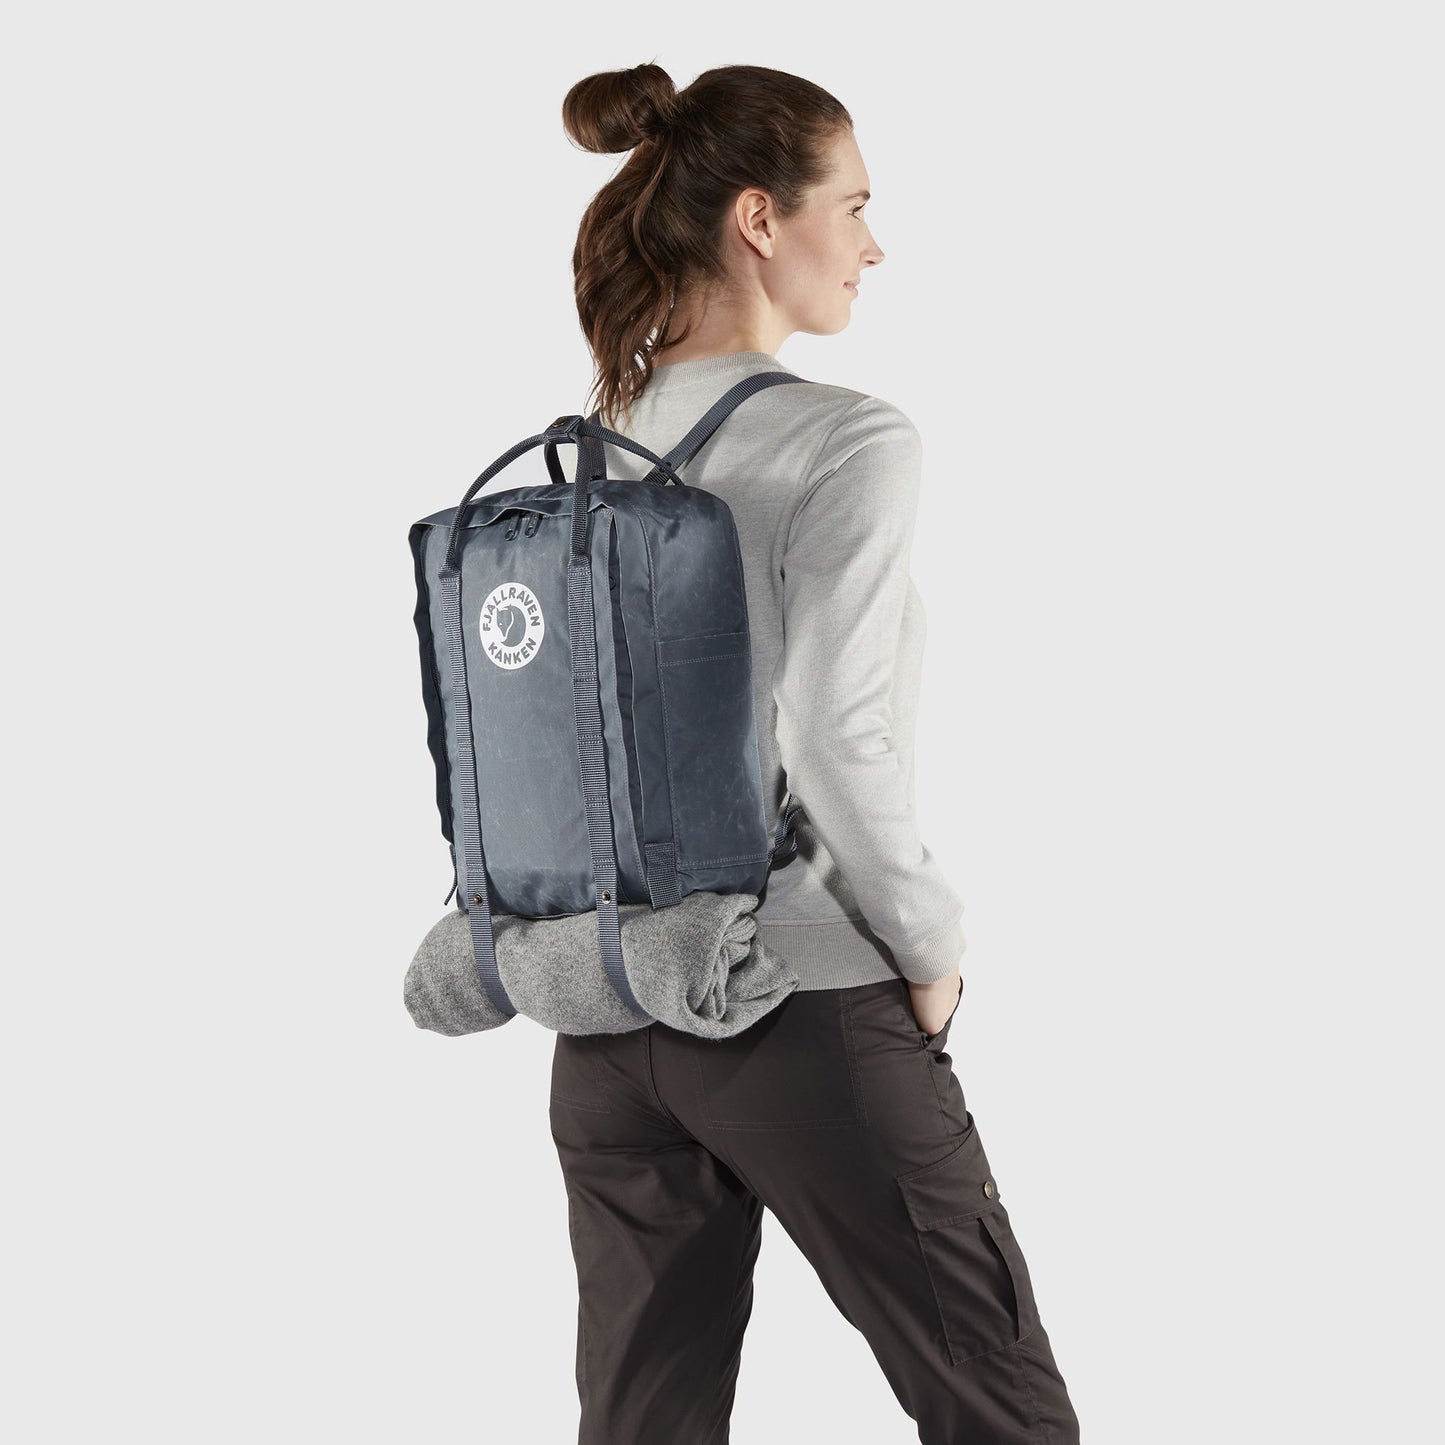 Fjallraven Tree - Kanken 狐狸袋 背囊 書包戶外背包 School bag outdoor backpack 16L - Charcoal Grey 23511-036